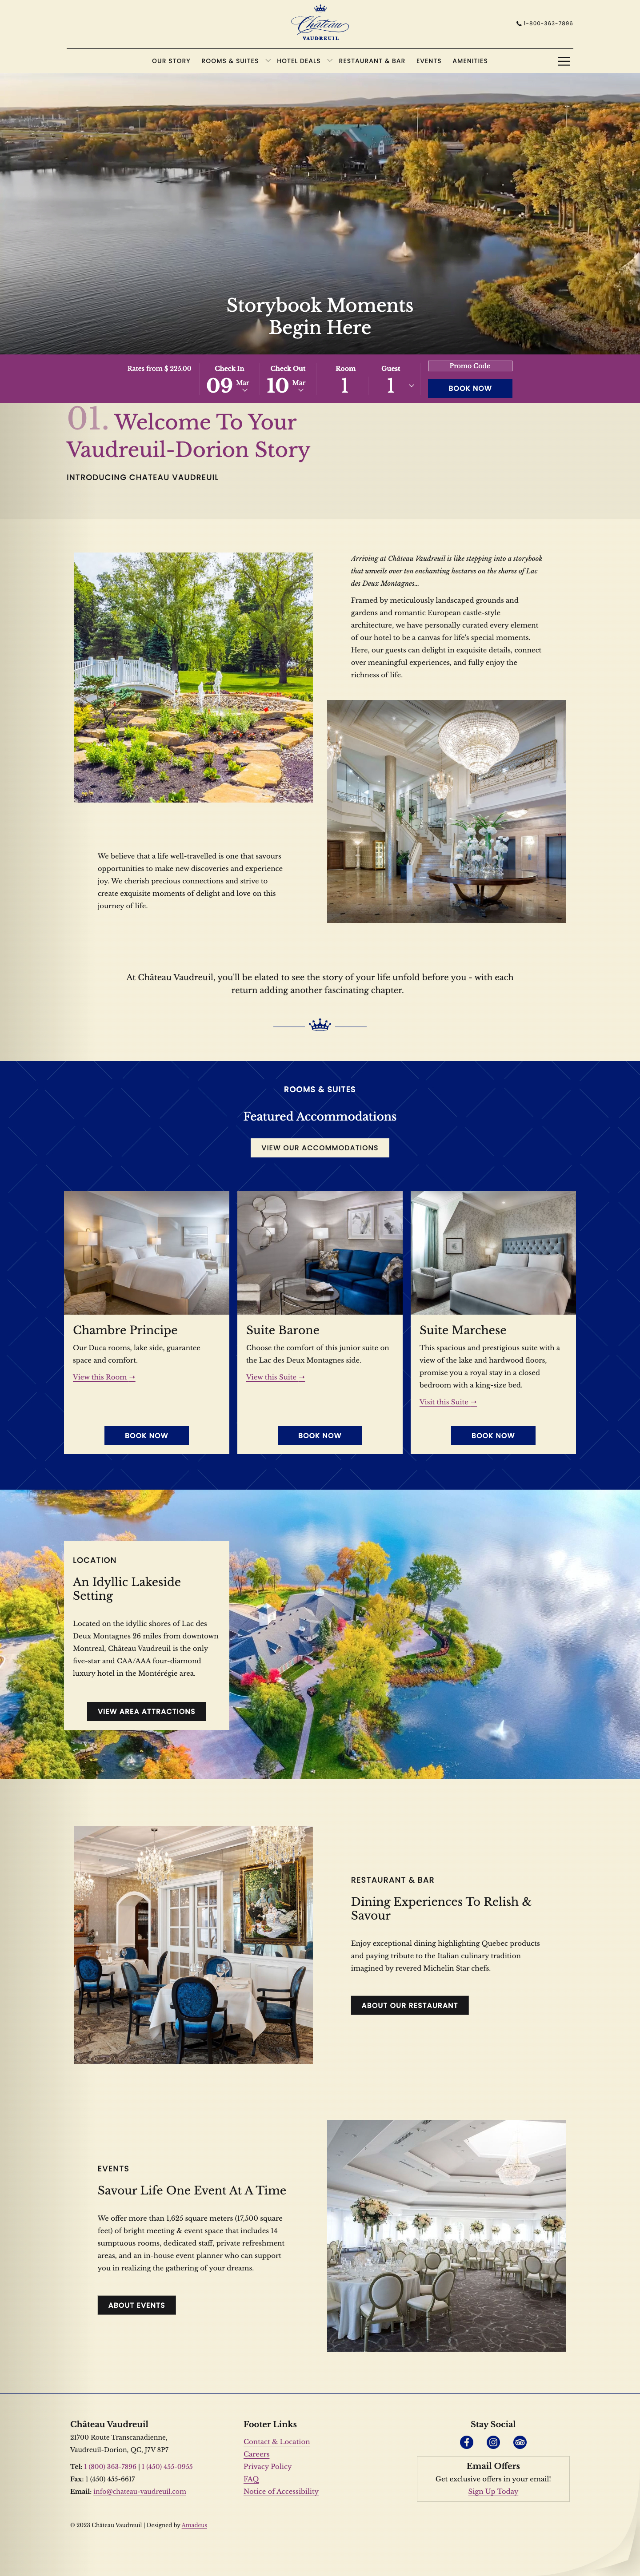 Château Vaudreuil - Home Page Design